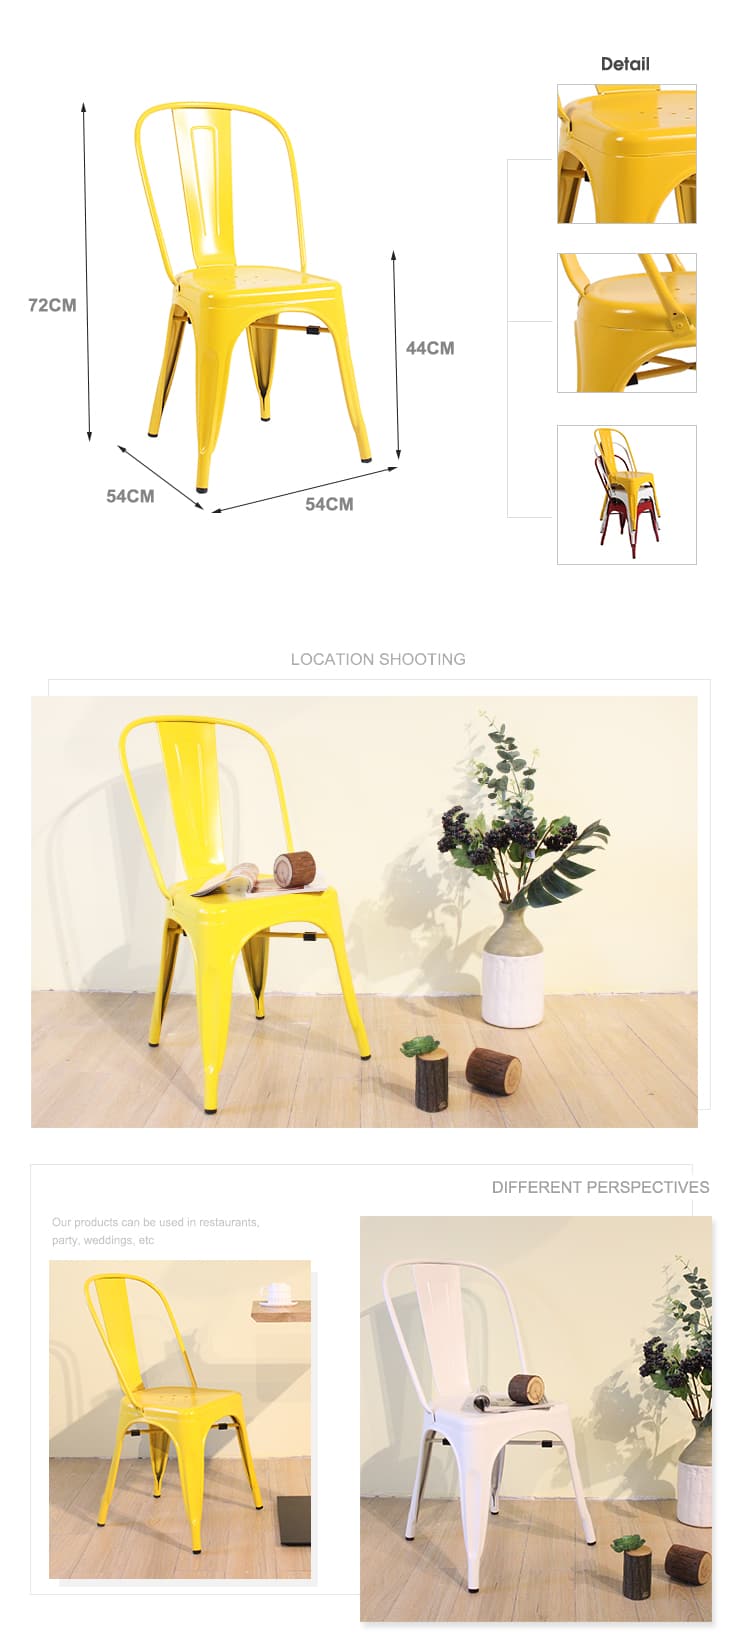 La chaise Tolix est une icône du design de mobilier avec le tabouret Tolix jaune accrocheur